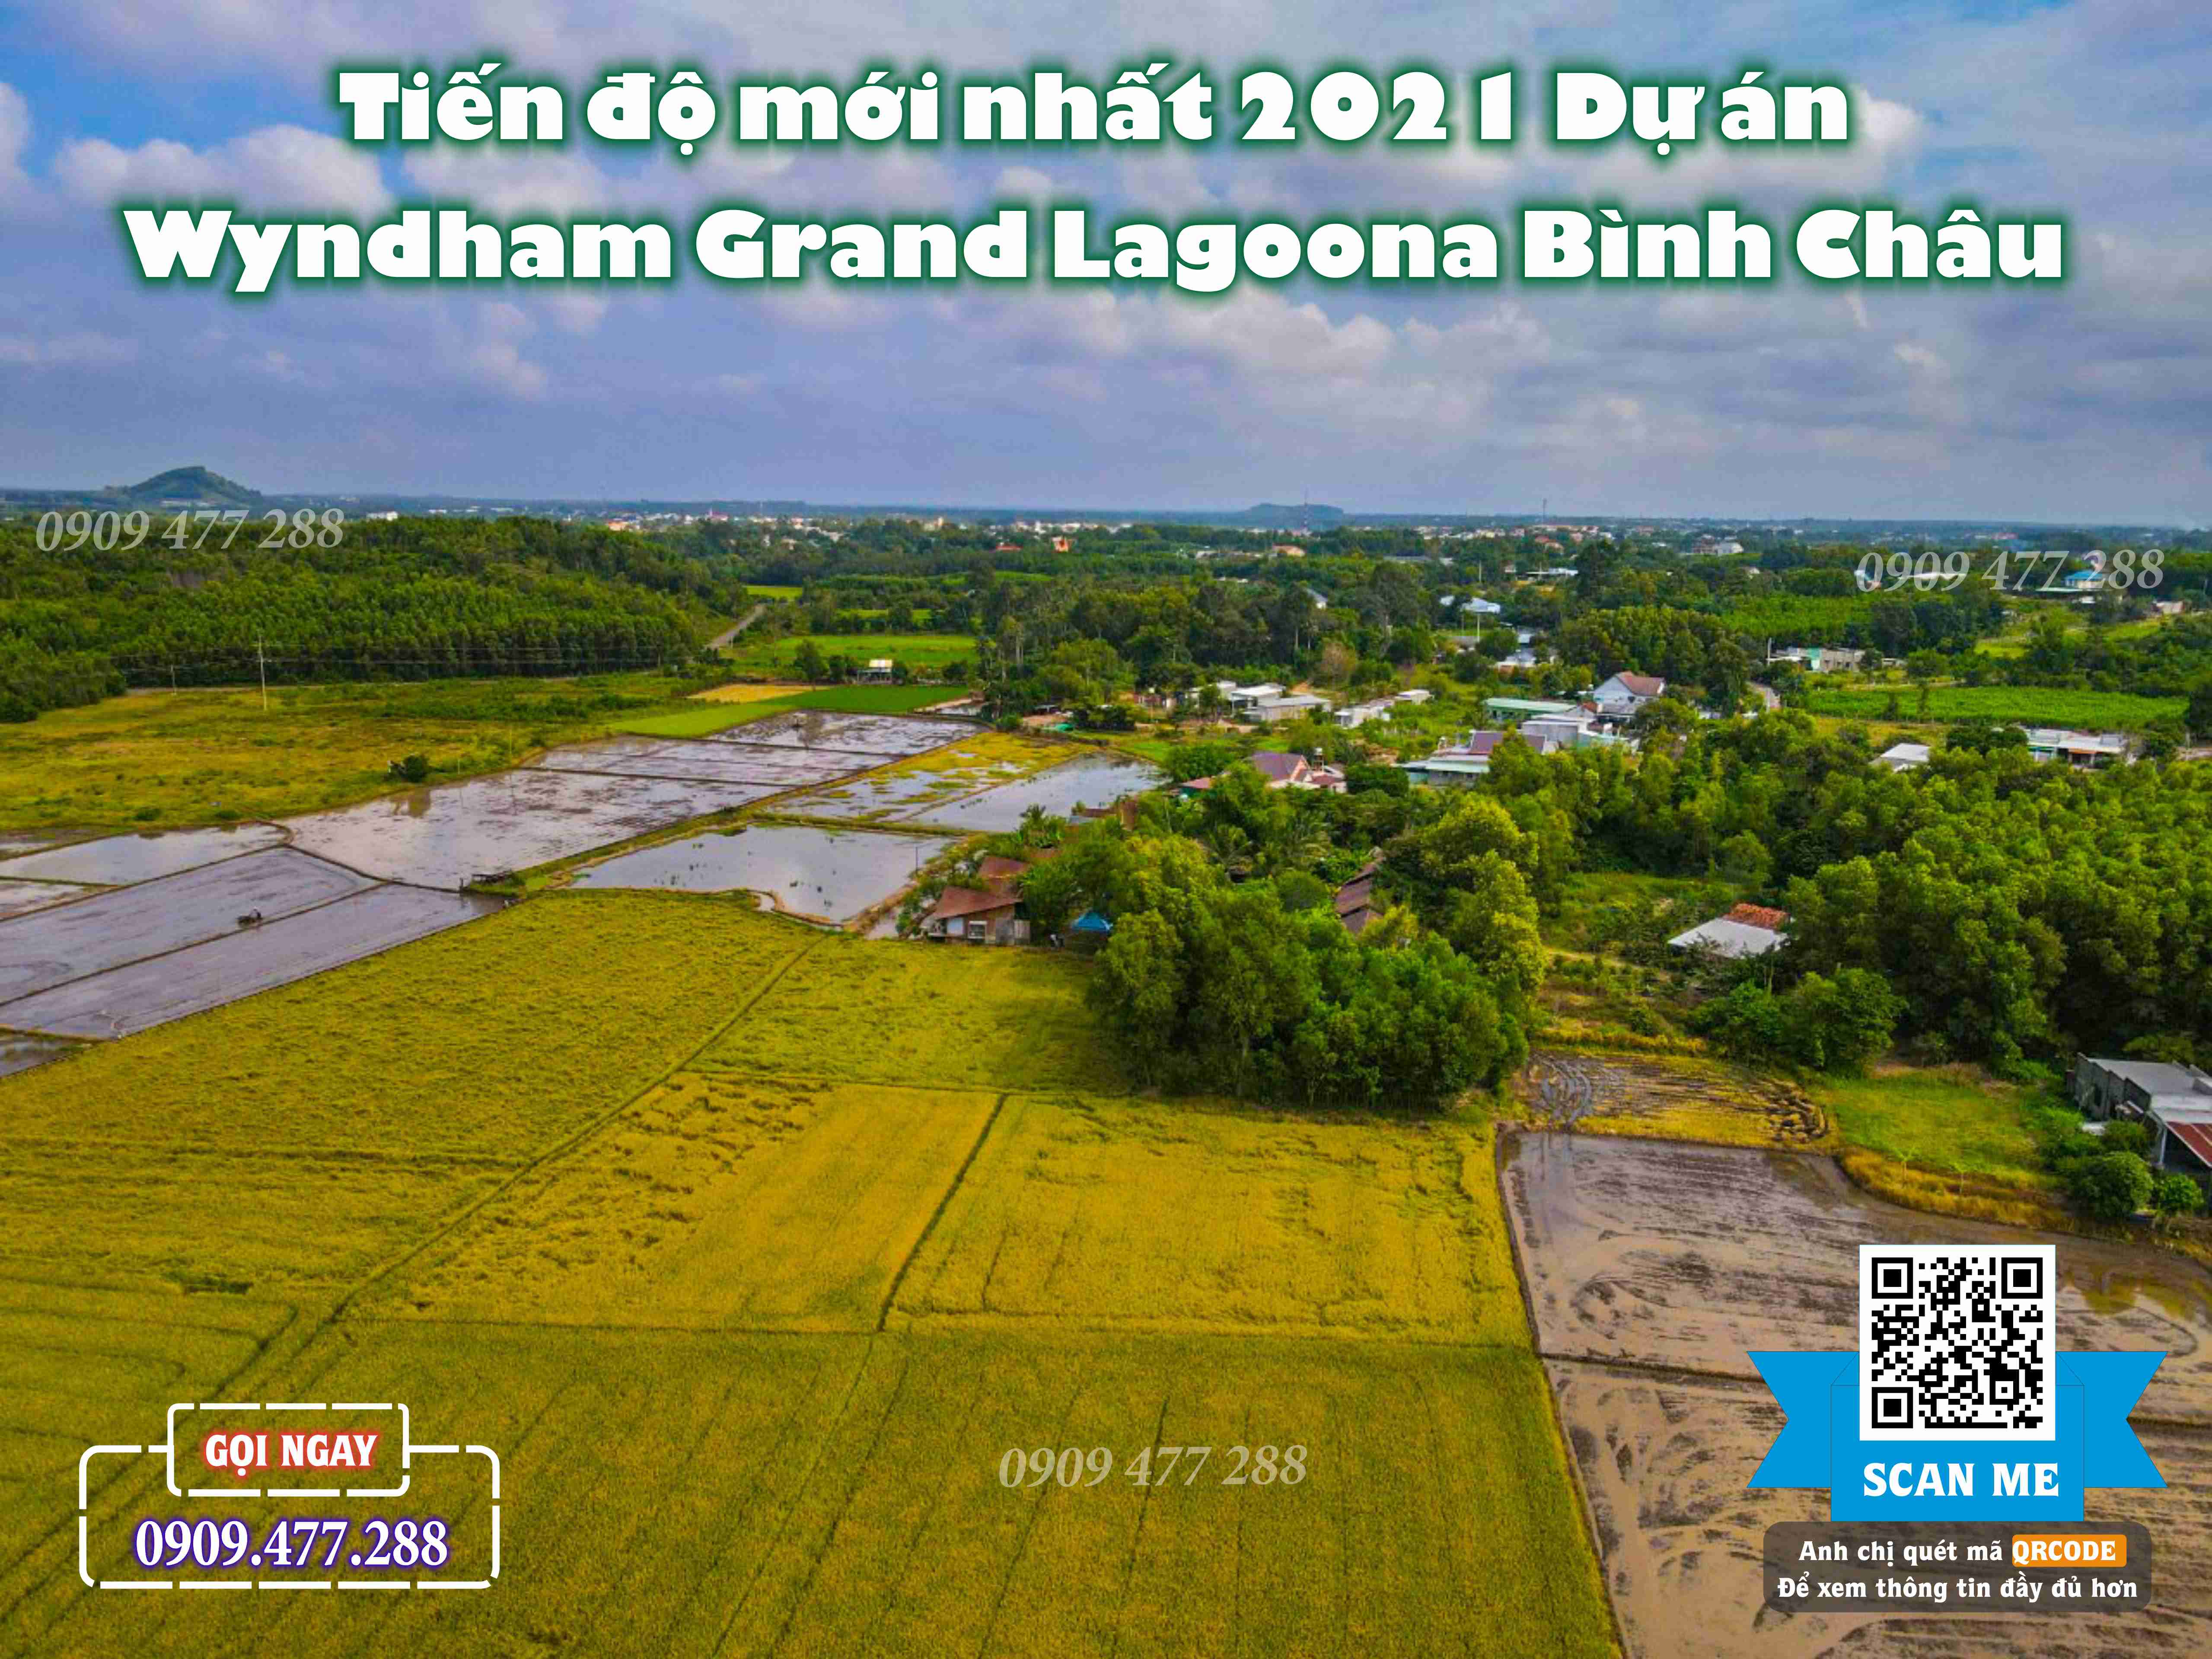 Wyndham Grand Lagoona Bình Châu (4)